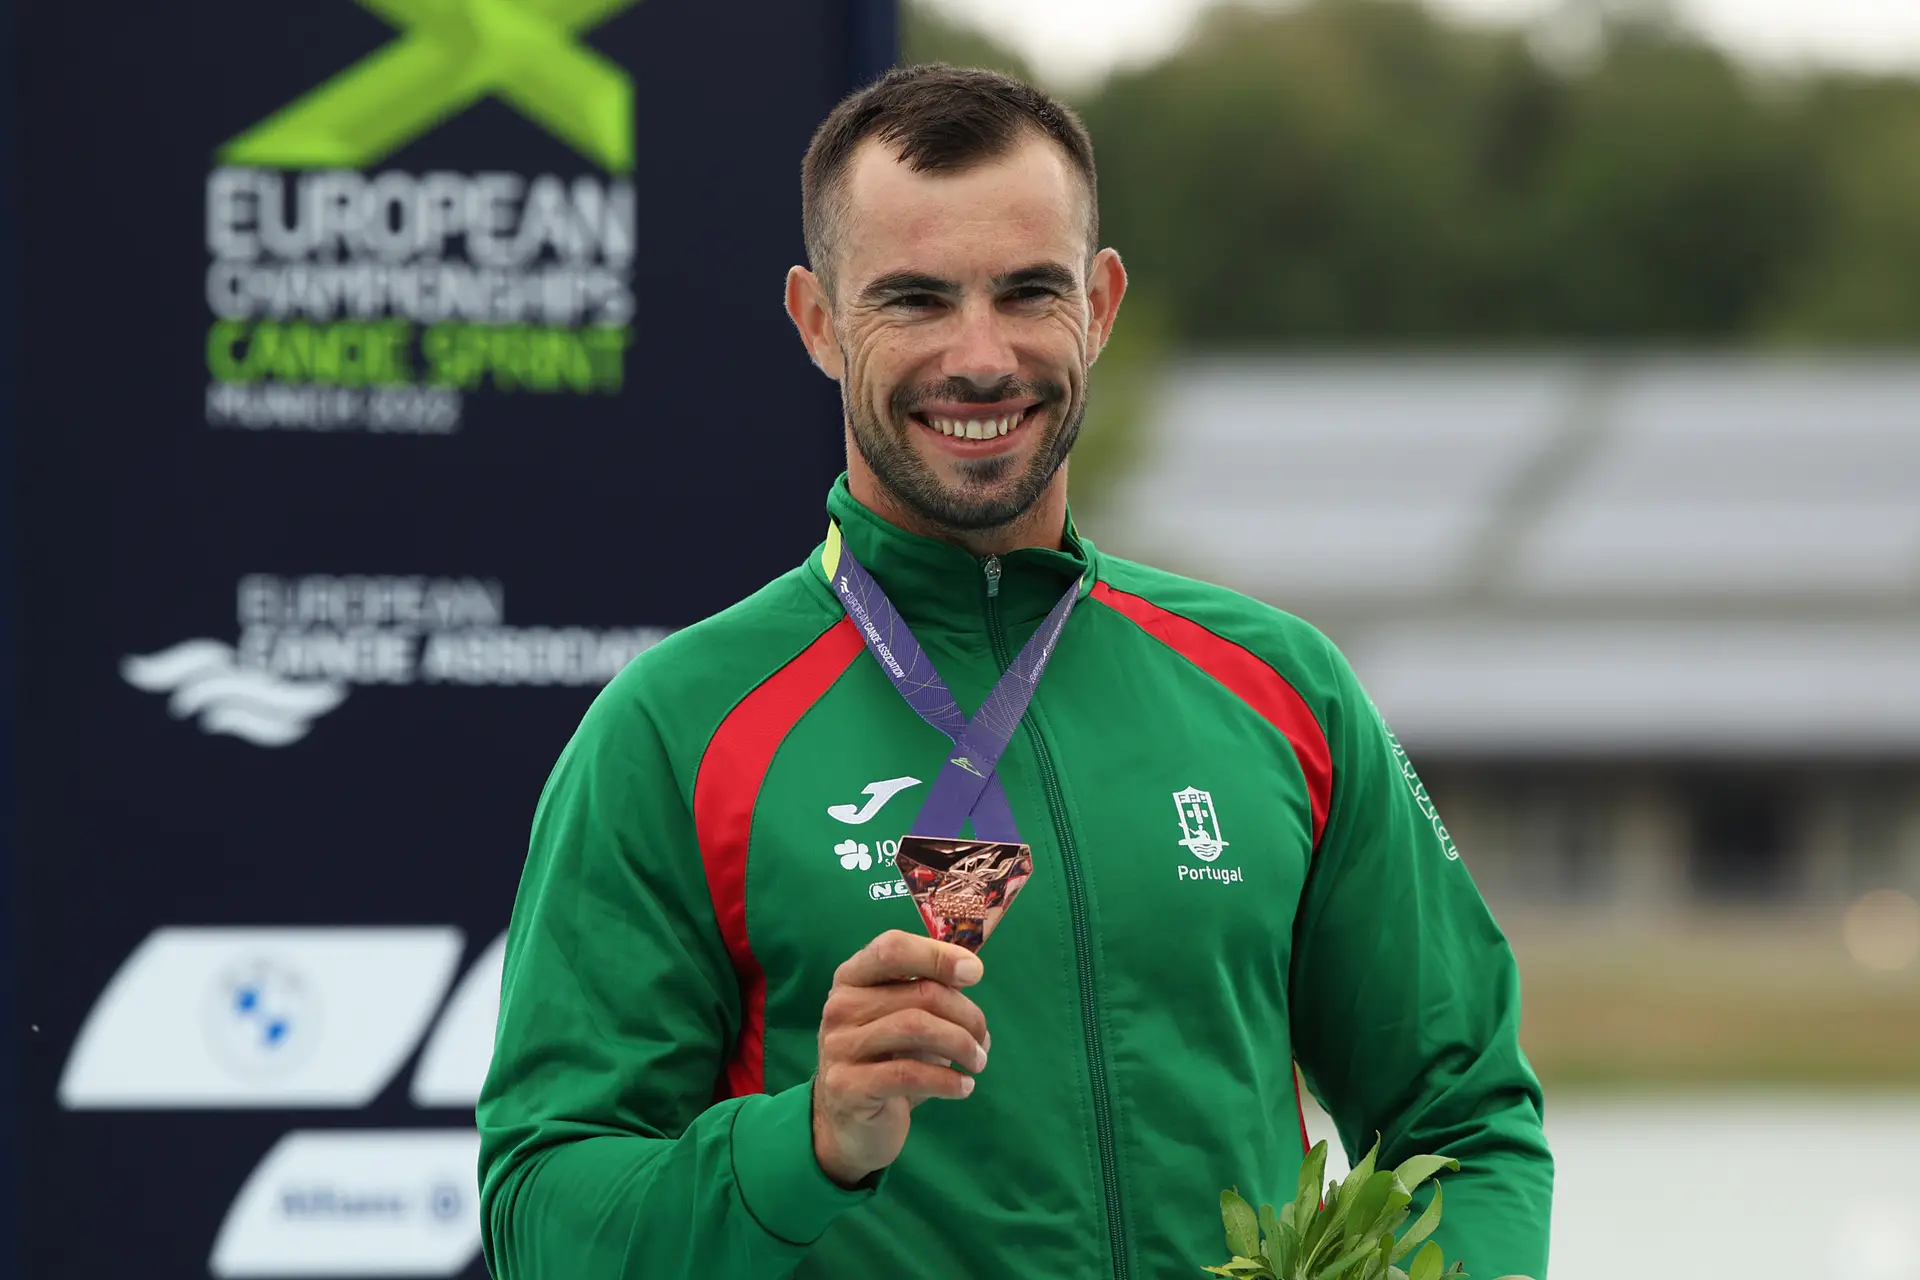 Fernando Pimenta conquista medalha de bronze em K1 500 metros nos Europeus de canoagem